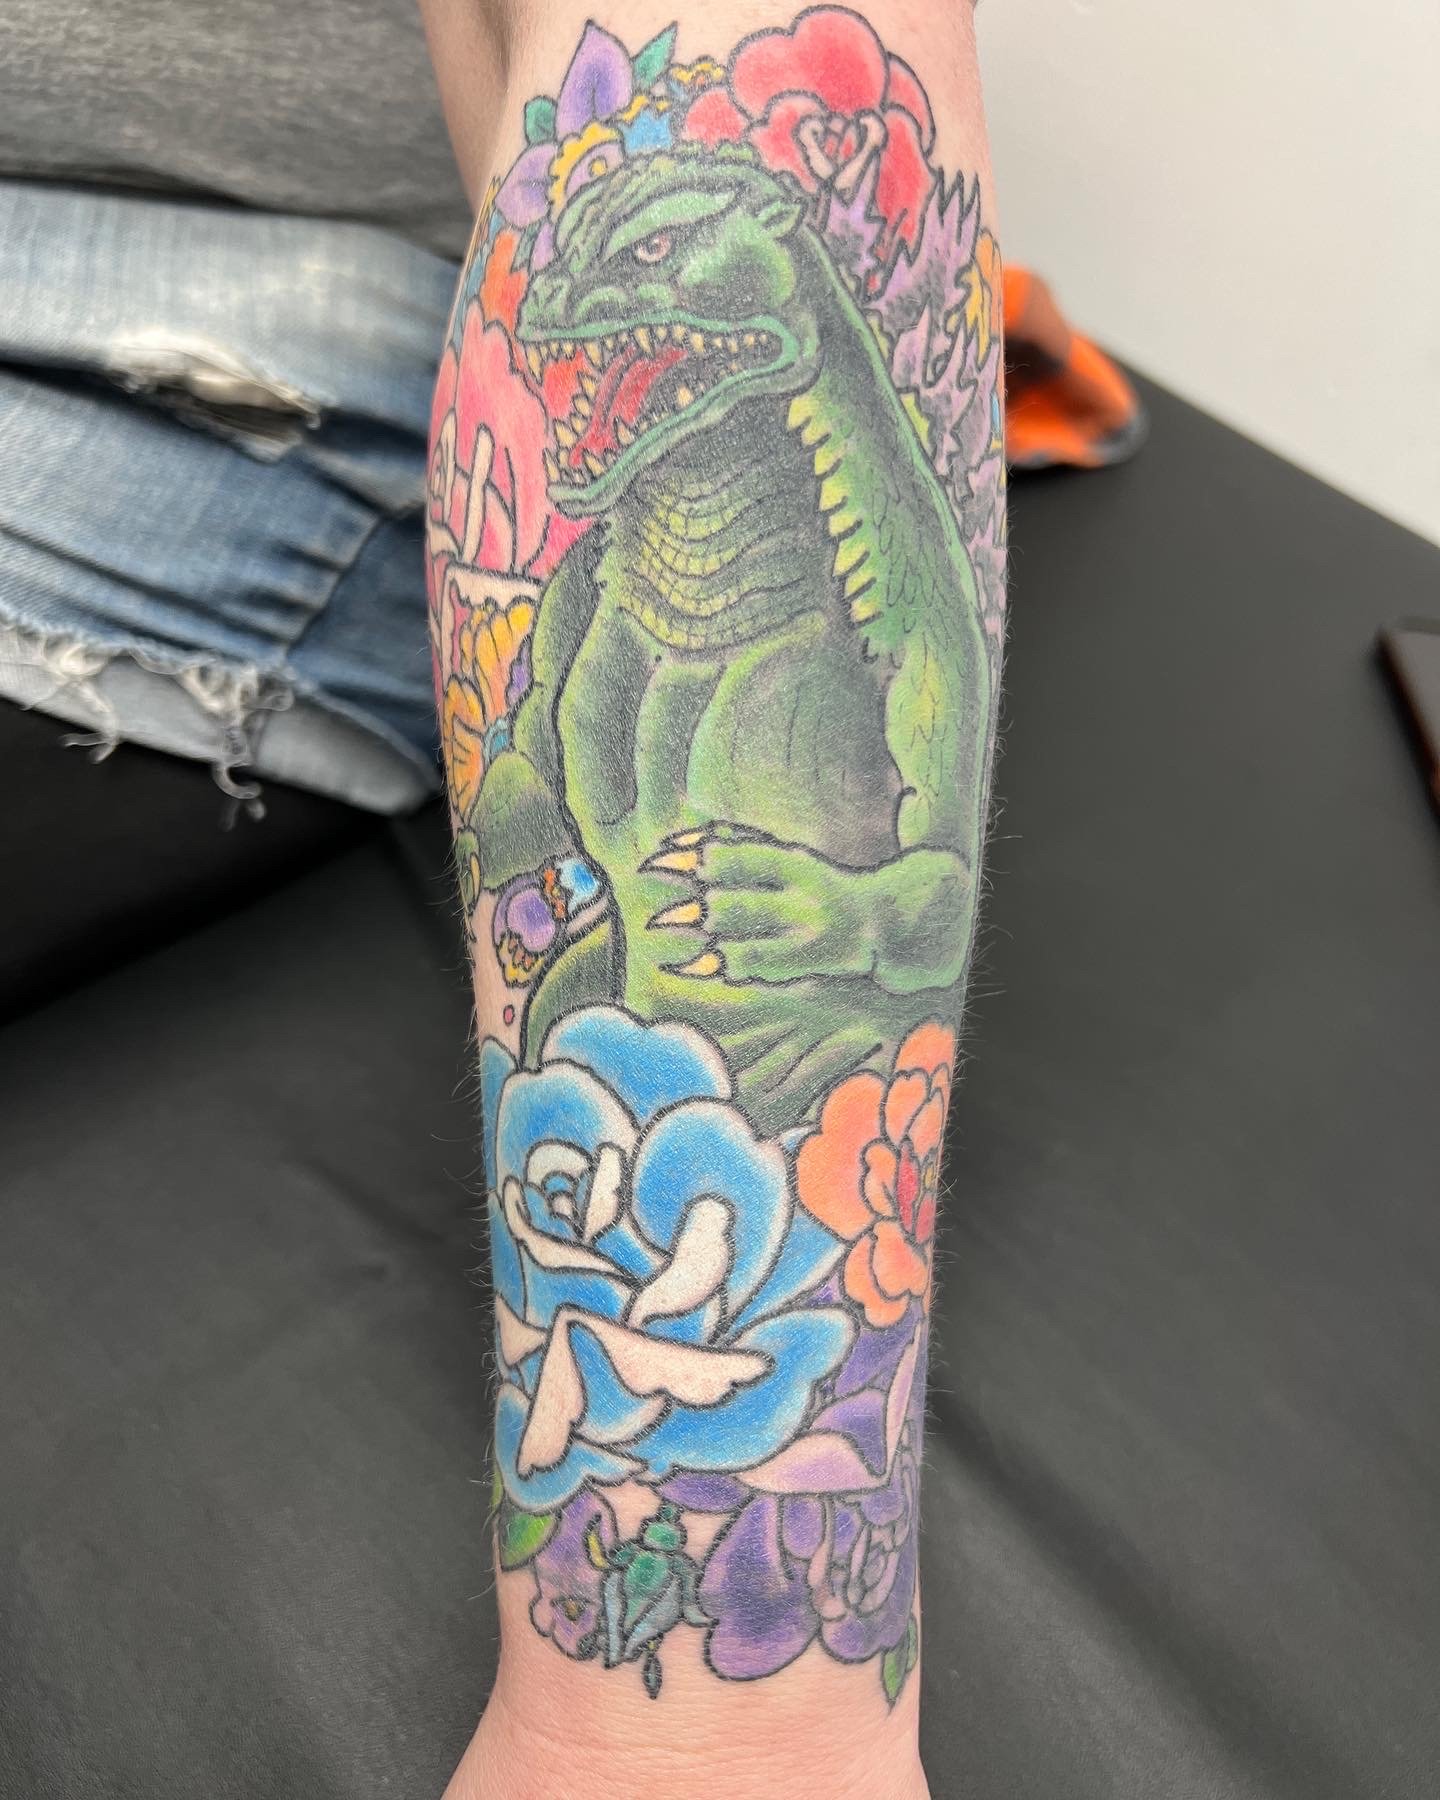 30 Best Godzilla Tattoo Ideas - Read This First | Godzilla tattoo, Tattoos,  Thigh tattoos women